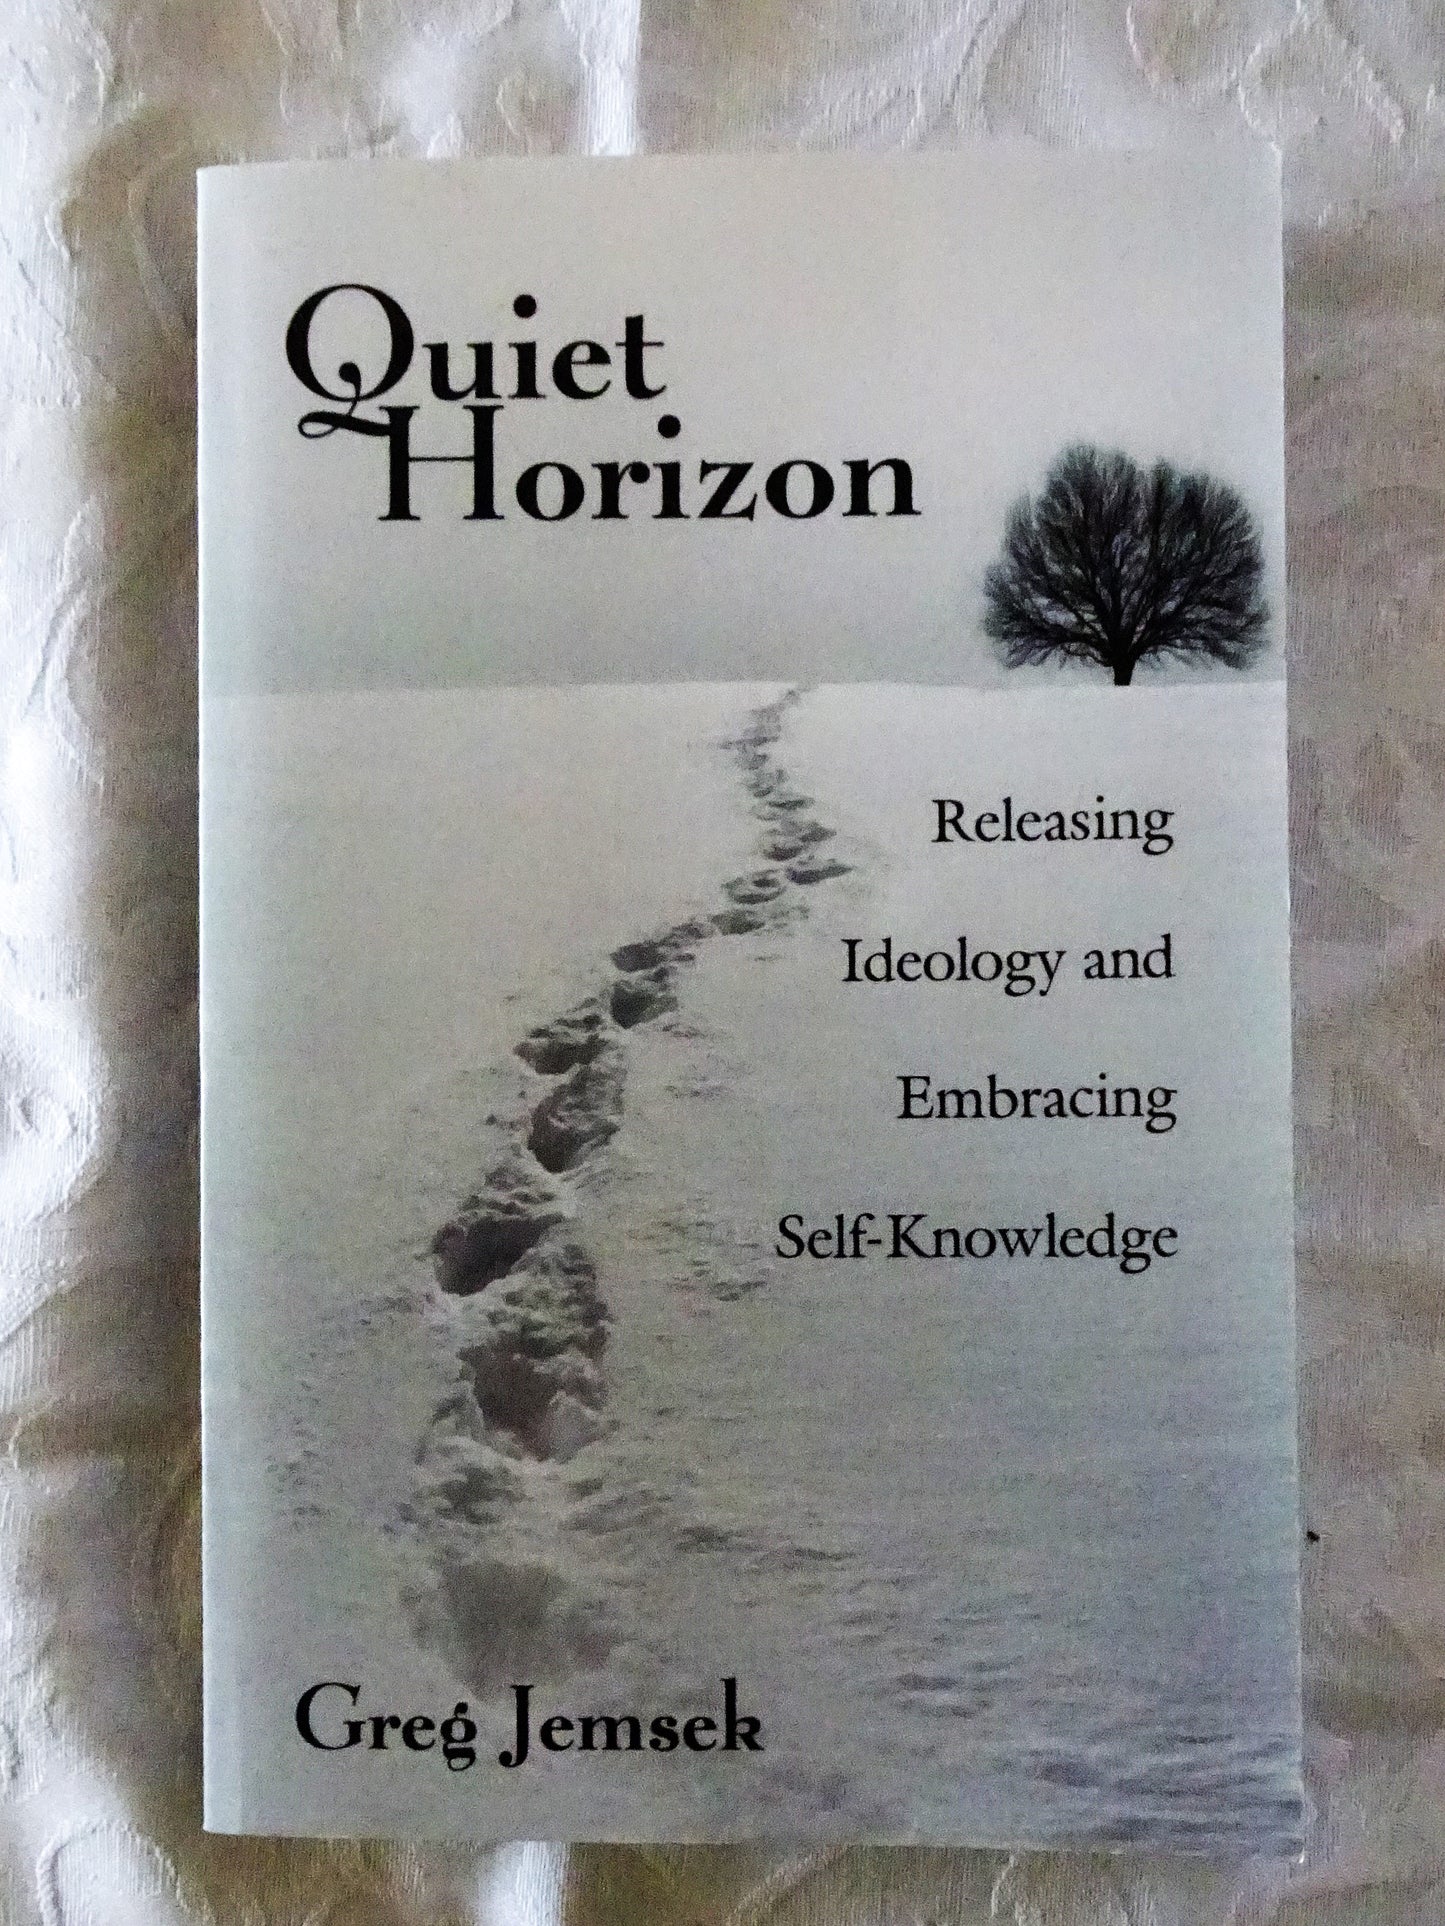 Quiet Horizon by Greg Jemsek